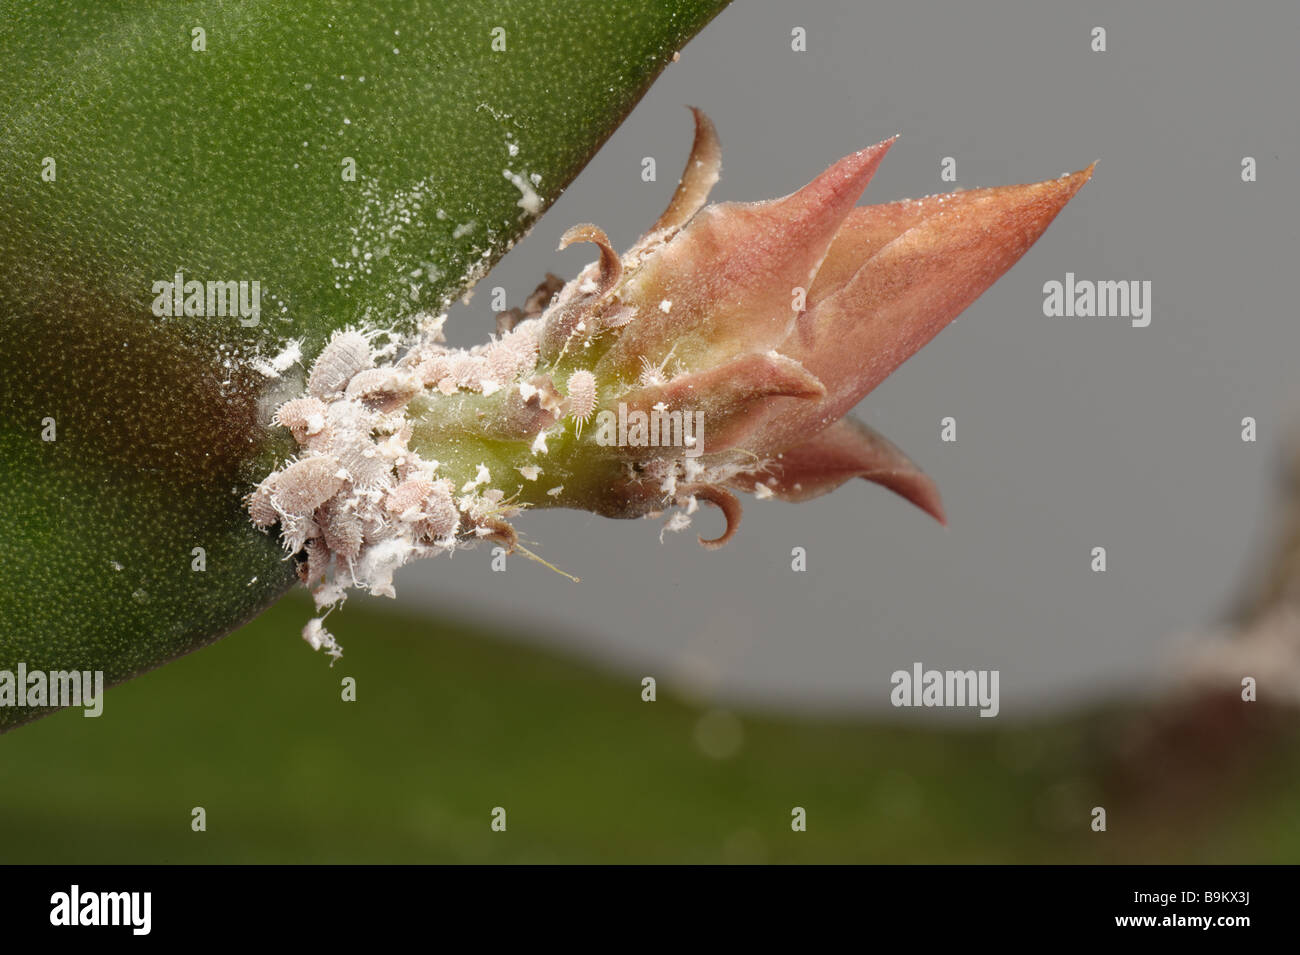 Glasshouse mealybug (Pseudococcus affinis) infestation on a orchid cactus flower bud peduncle Stock Photo